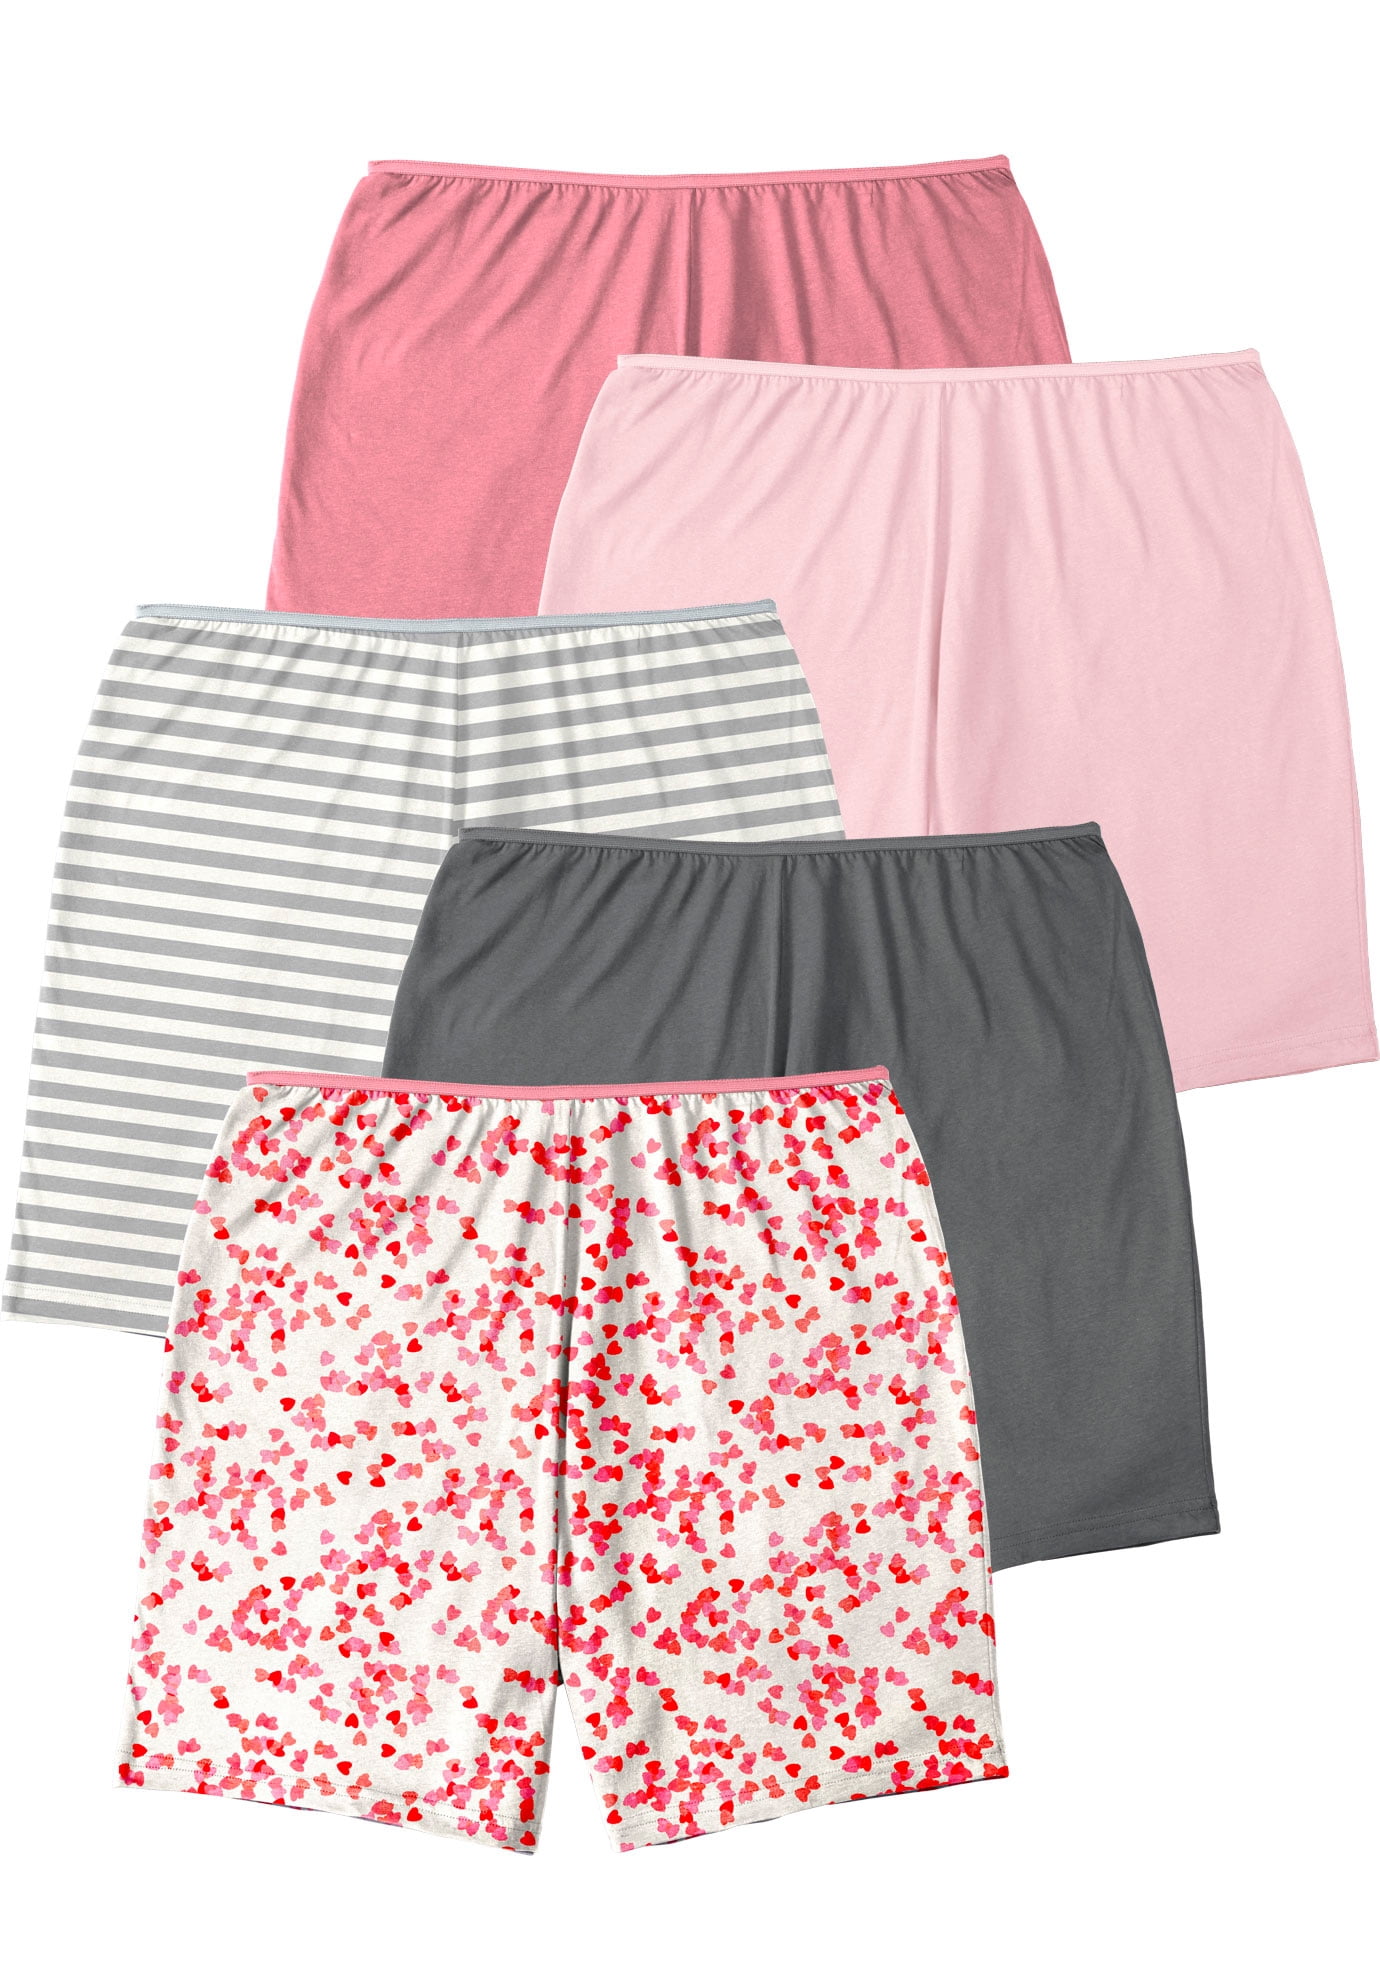 Comfort Choice Women's Plus Size Cotton Boxer 5-Pack Panties - Walmart.com